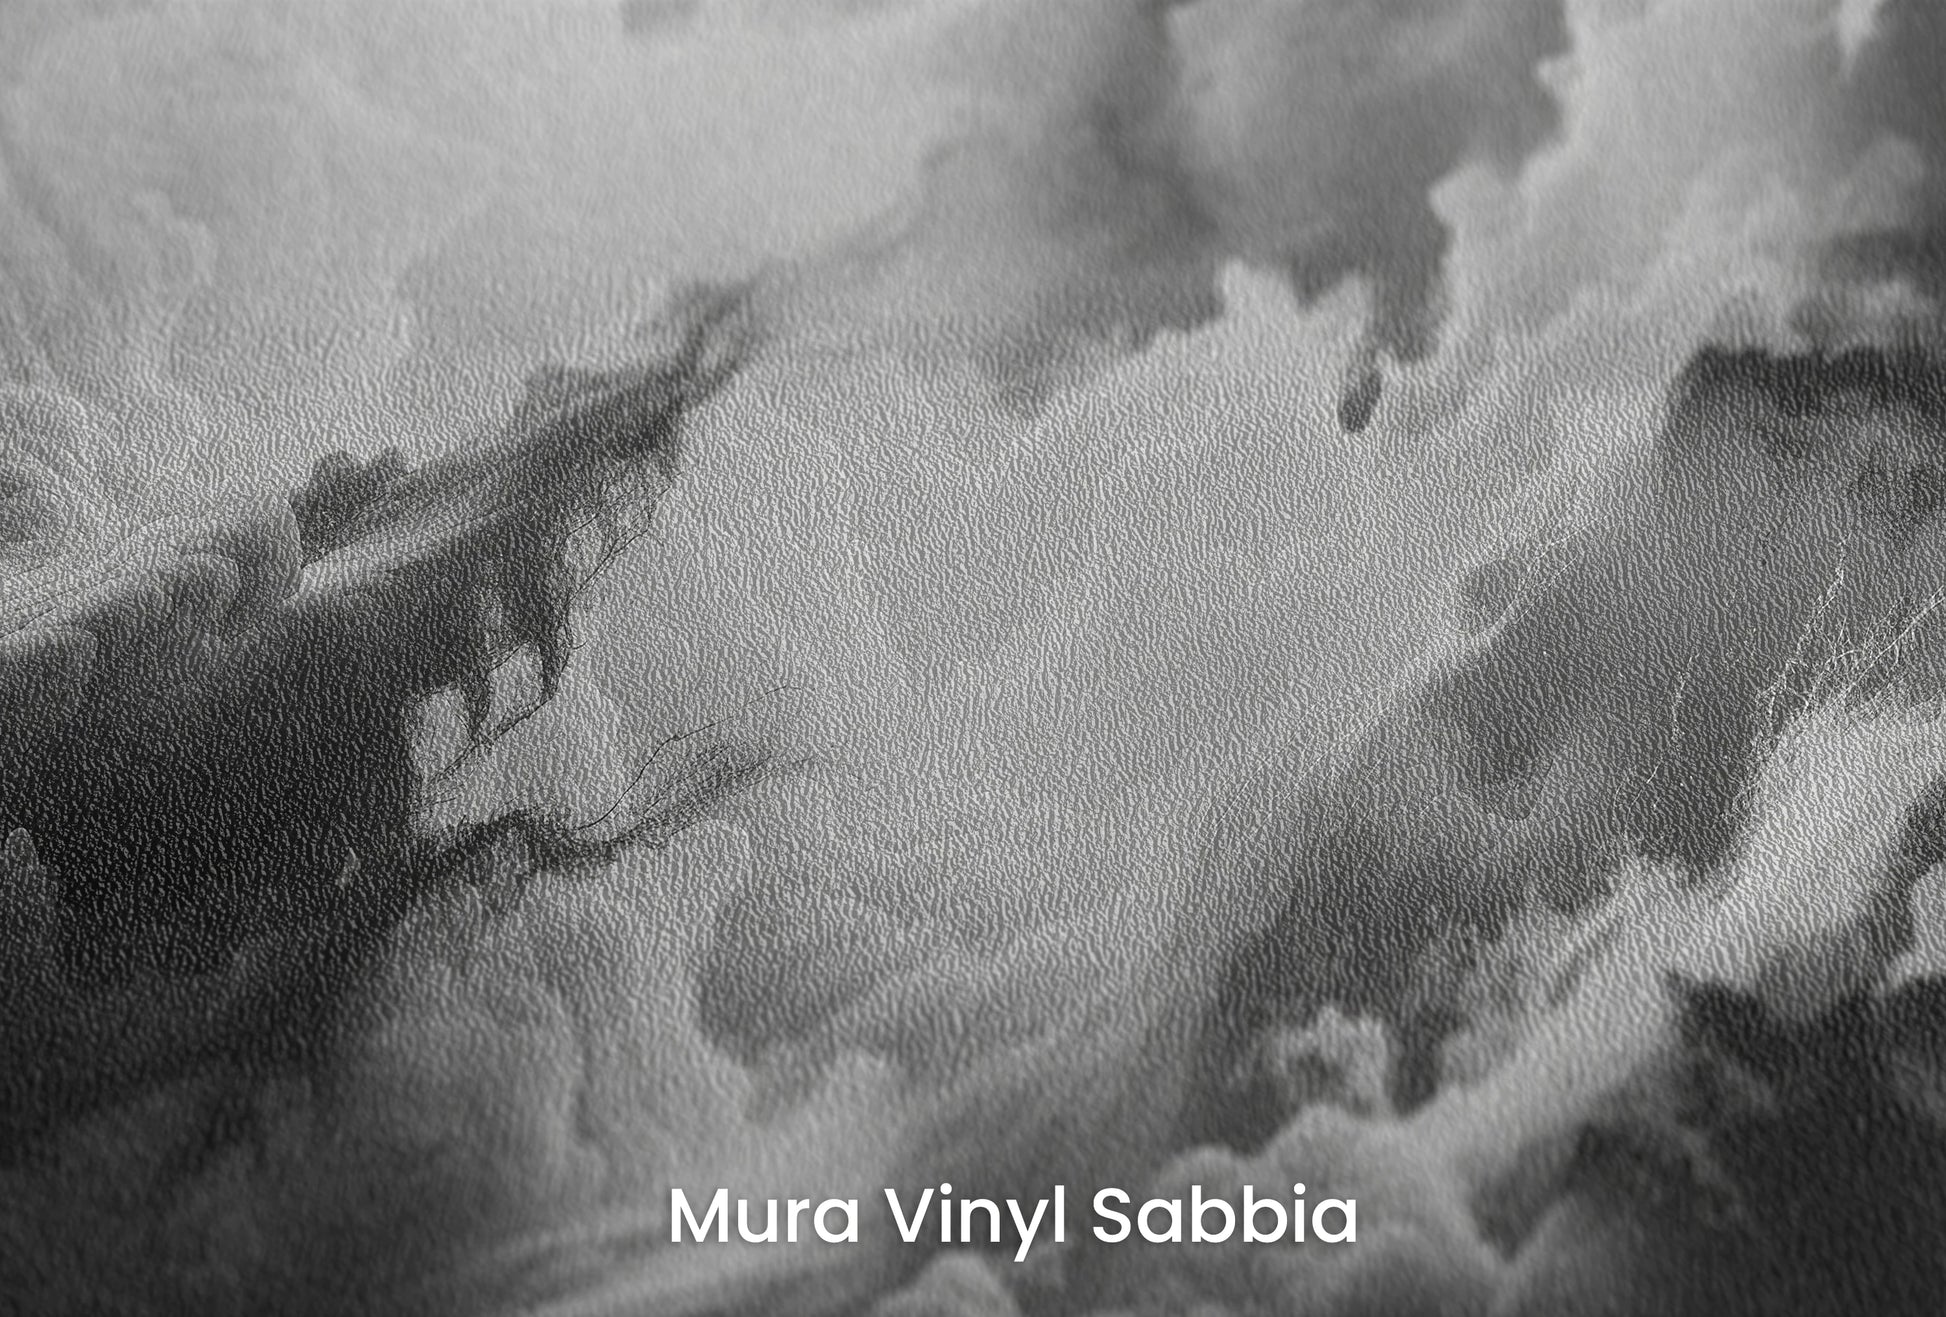 Zbliżenie na artystyczną fototapetę o nazwie Luminous Chaos na podłożu Mura Vinyl Sabbia struktura grubego ziarna piasku.